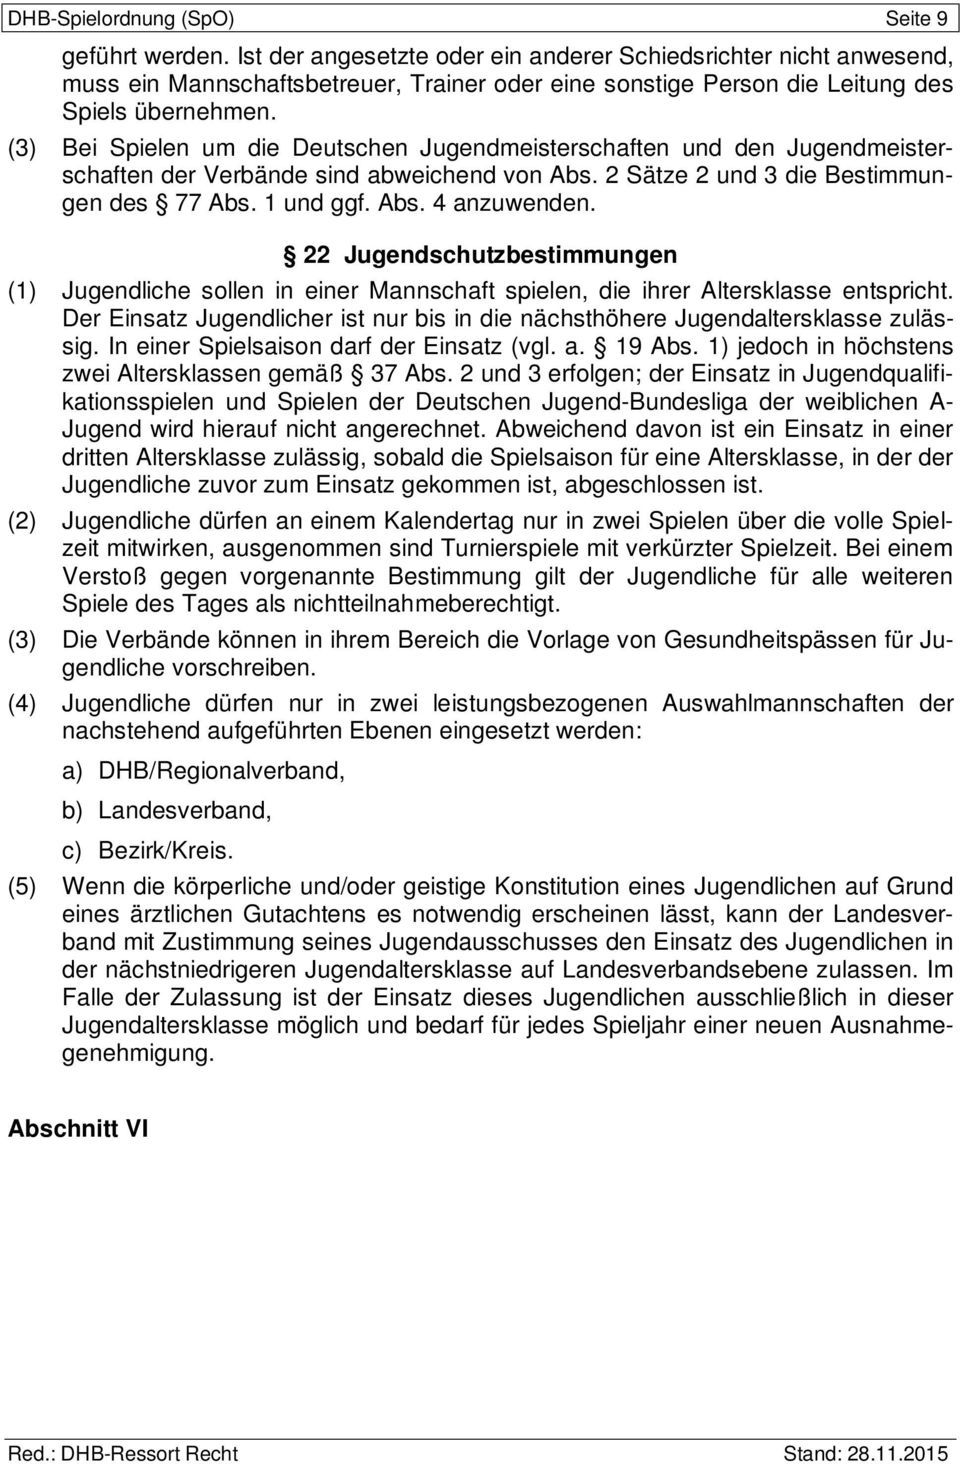 (3) Bei Spielen um die Deutschen Jugendmeisterschaften und den Jugendmeisterschaften der Verbände sind abweichend von Abs. 2 Sätze 2 und 3 die Bestimmungen des 77 Abs. 1 und ggf. Abs. 4 anzuwenden.